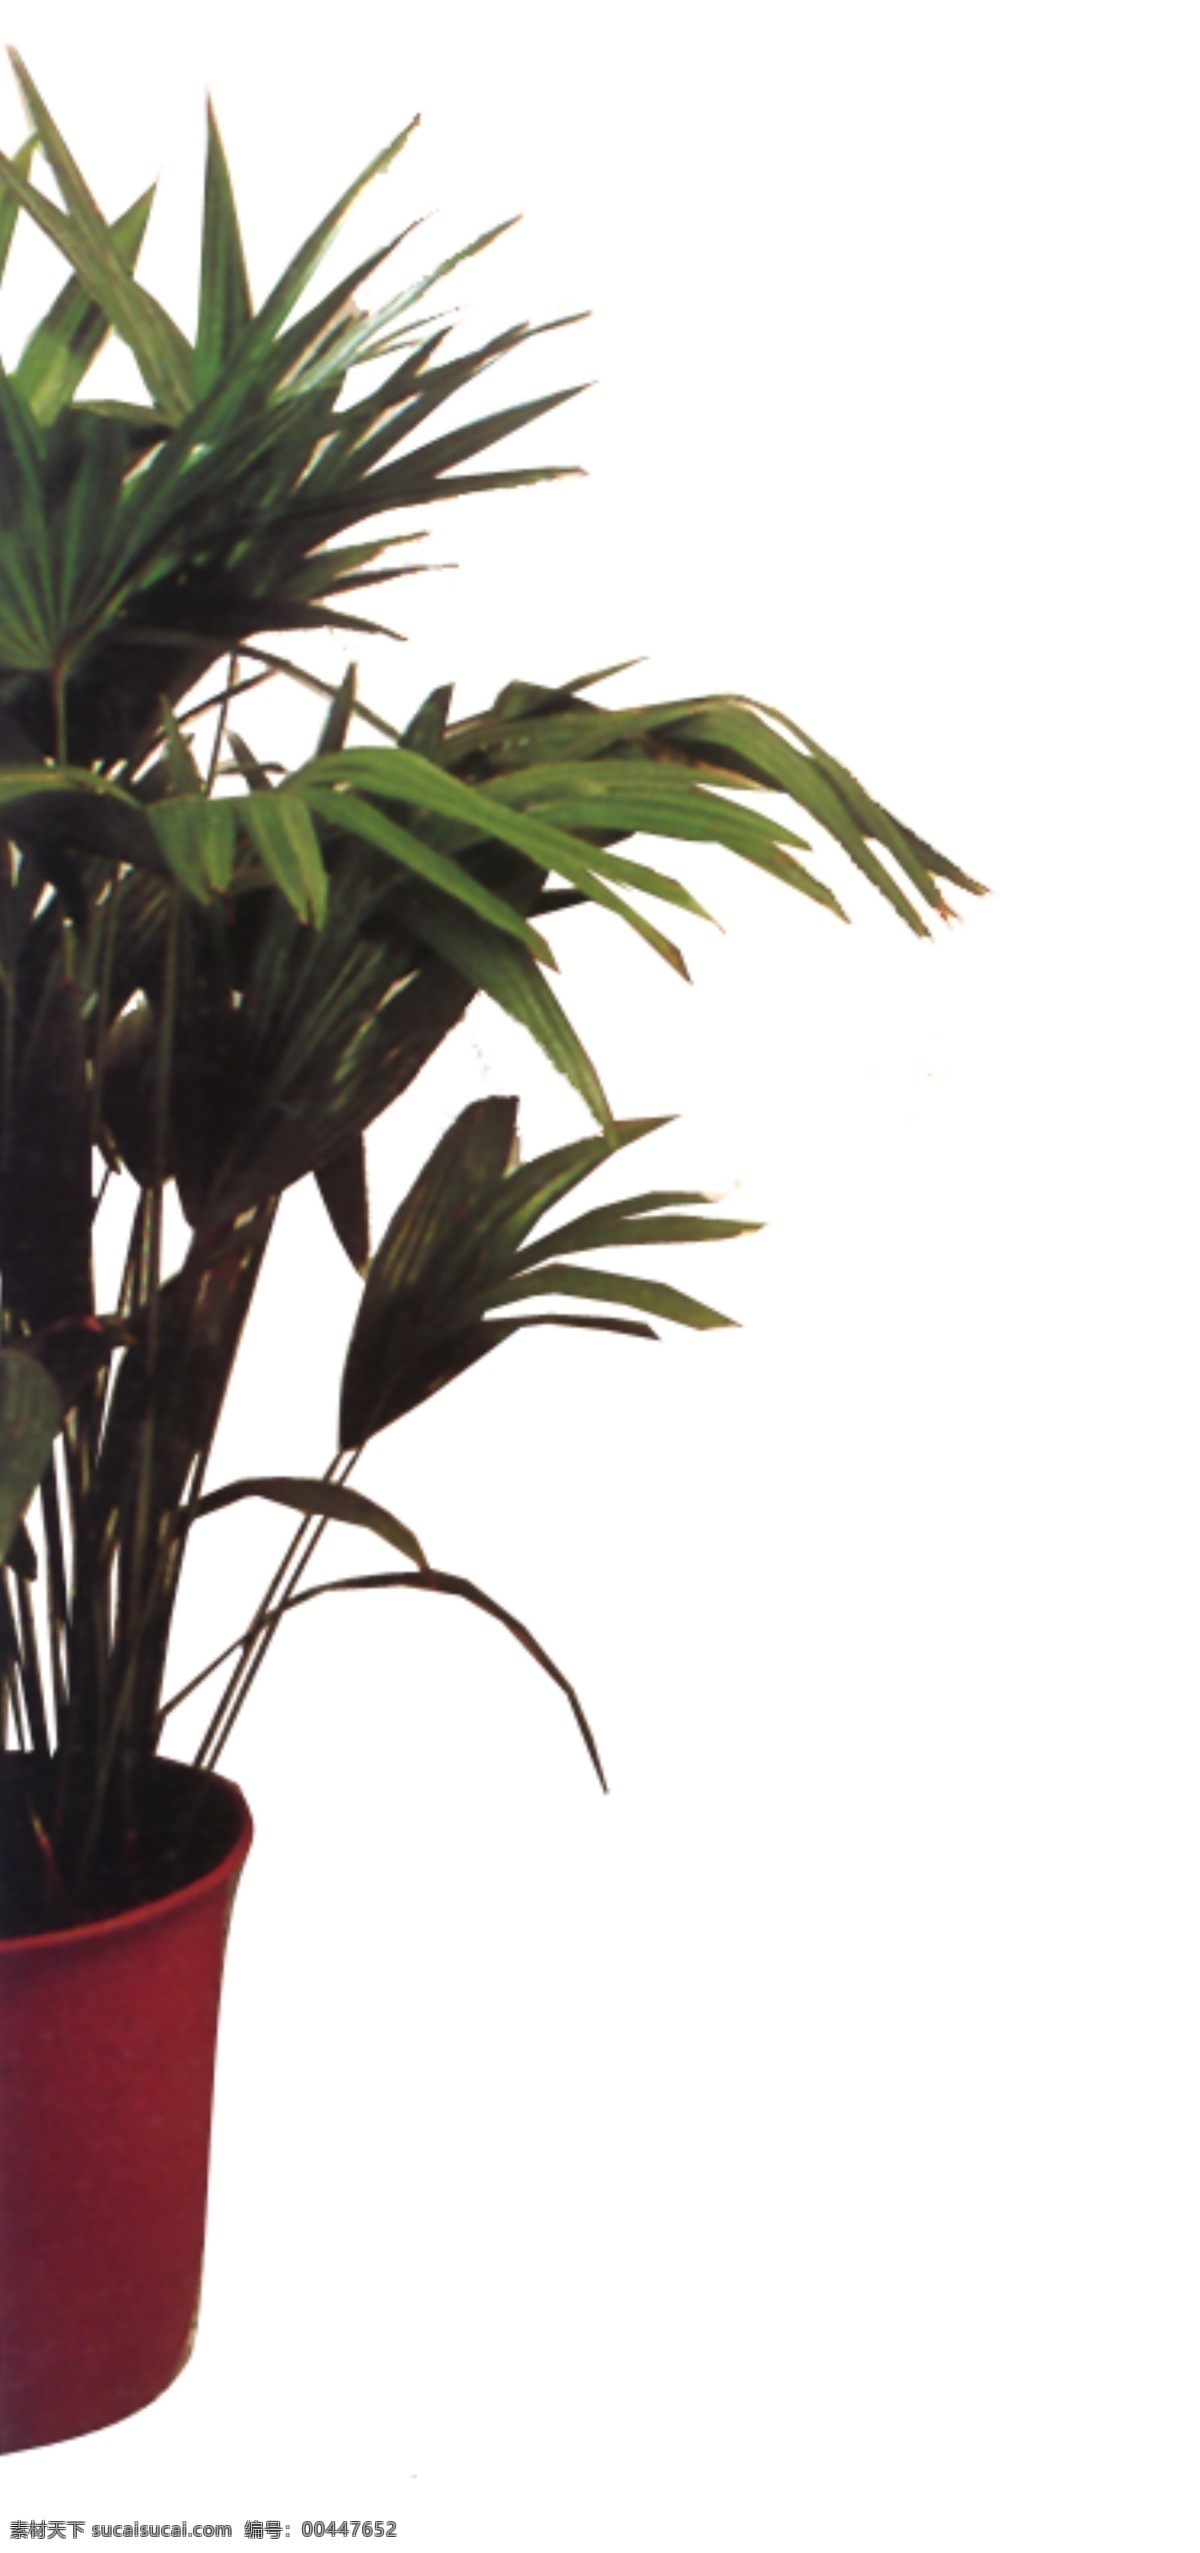 室内 植物 花草装饰 室内植物 装饰素材 室内装饰用图